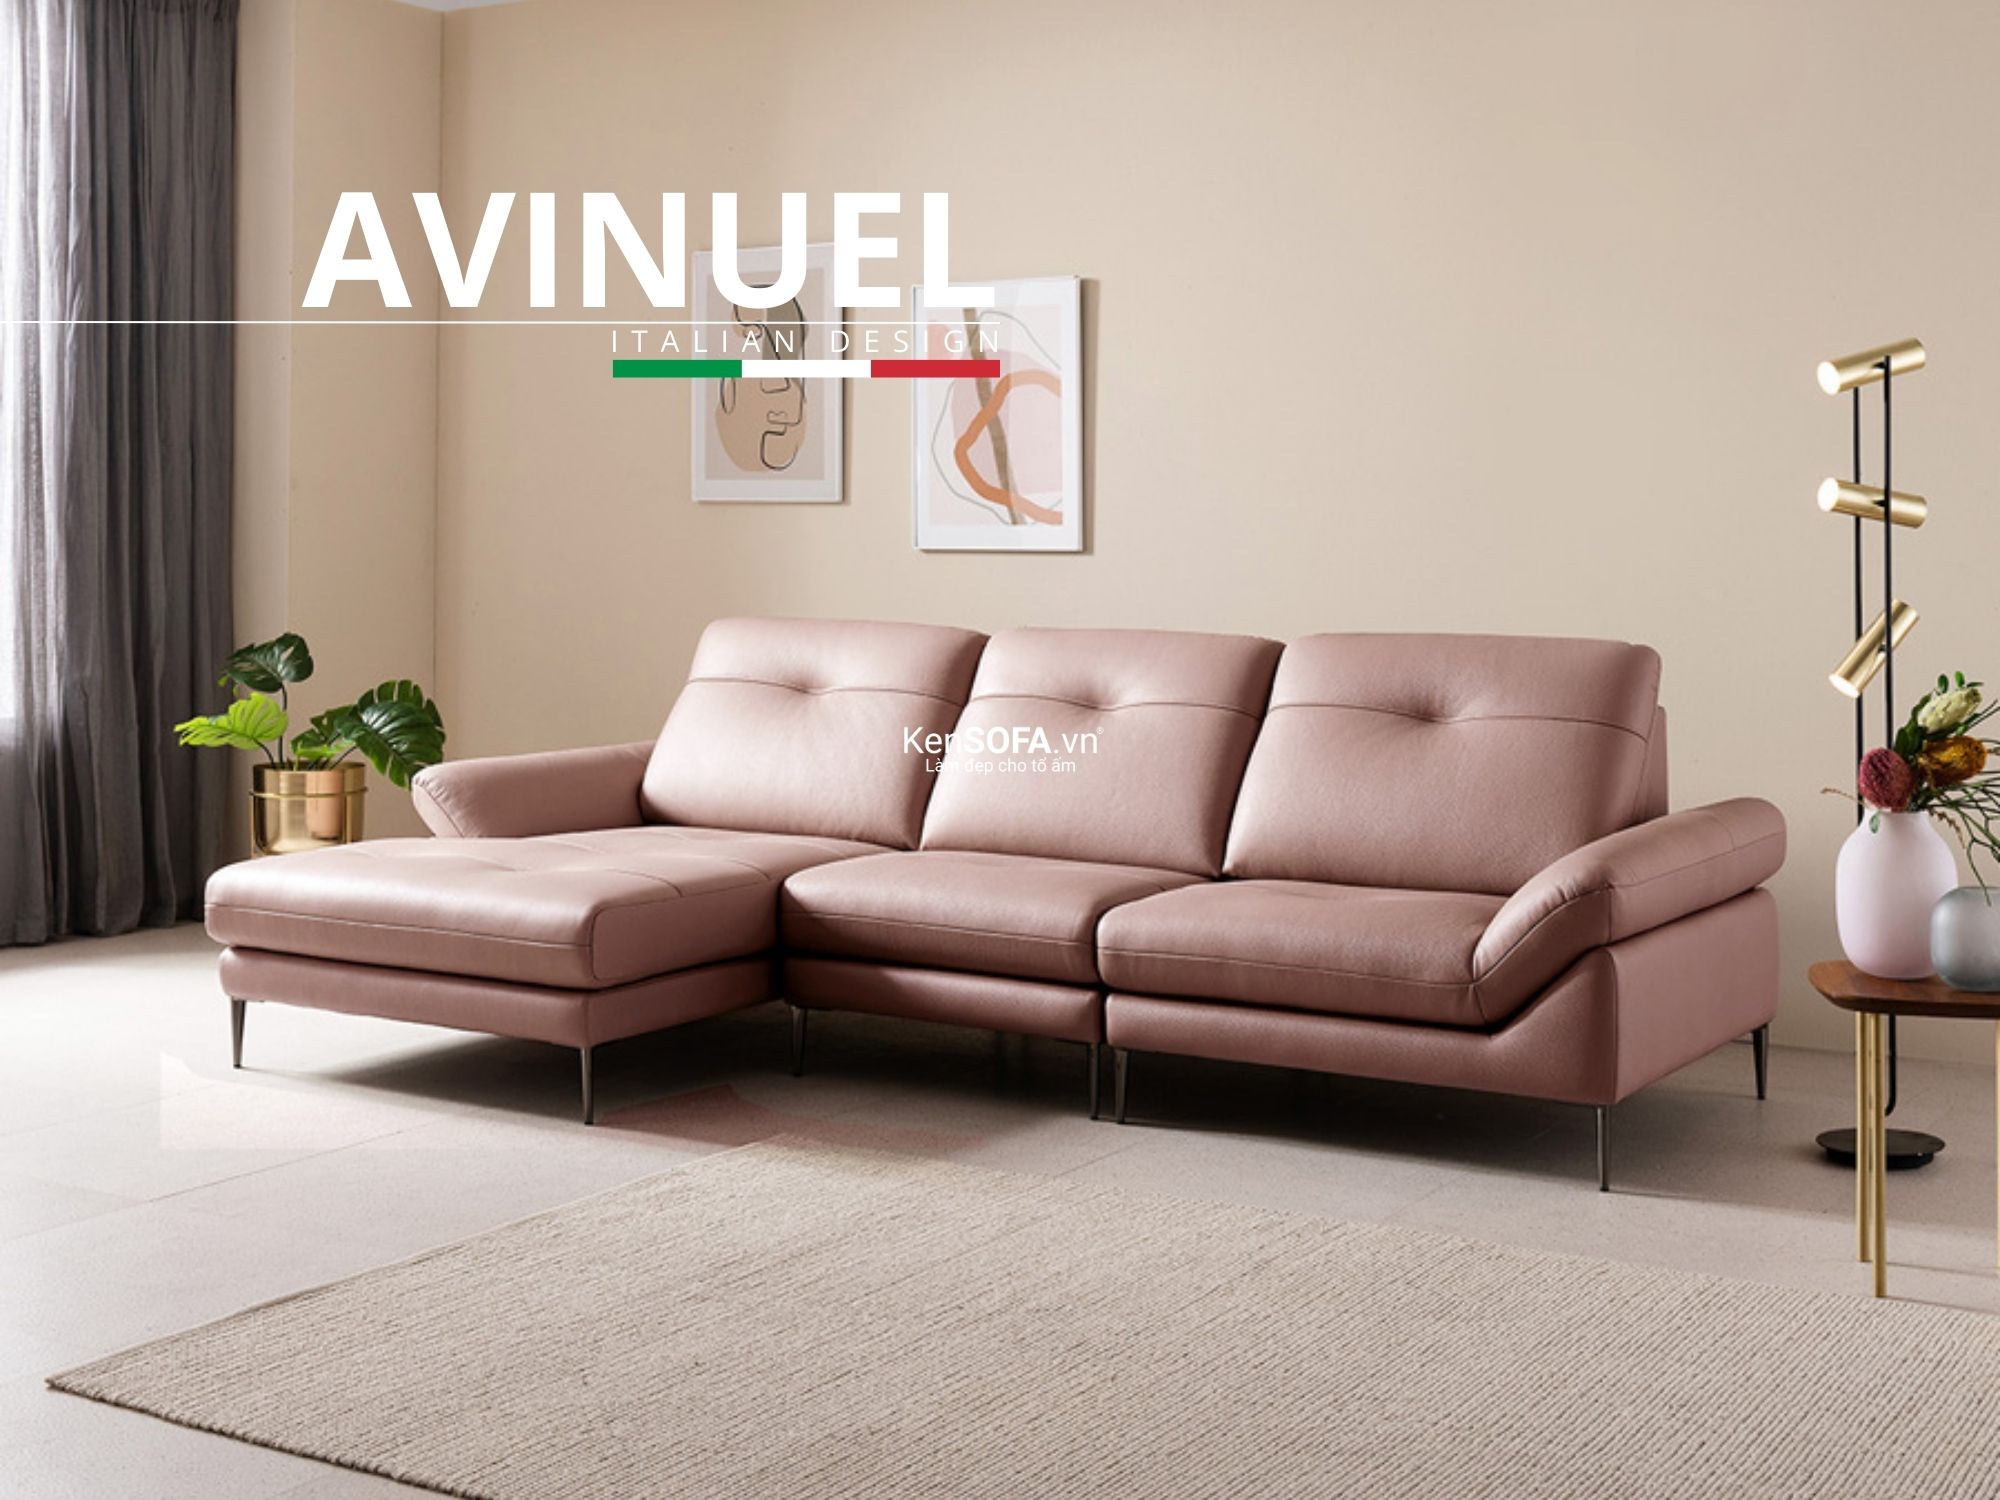 Sofa góc da cao cấp CC14 Avinuel da Hàn Quốc nhập khẩu